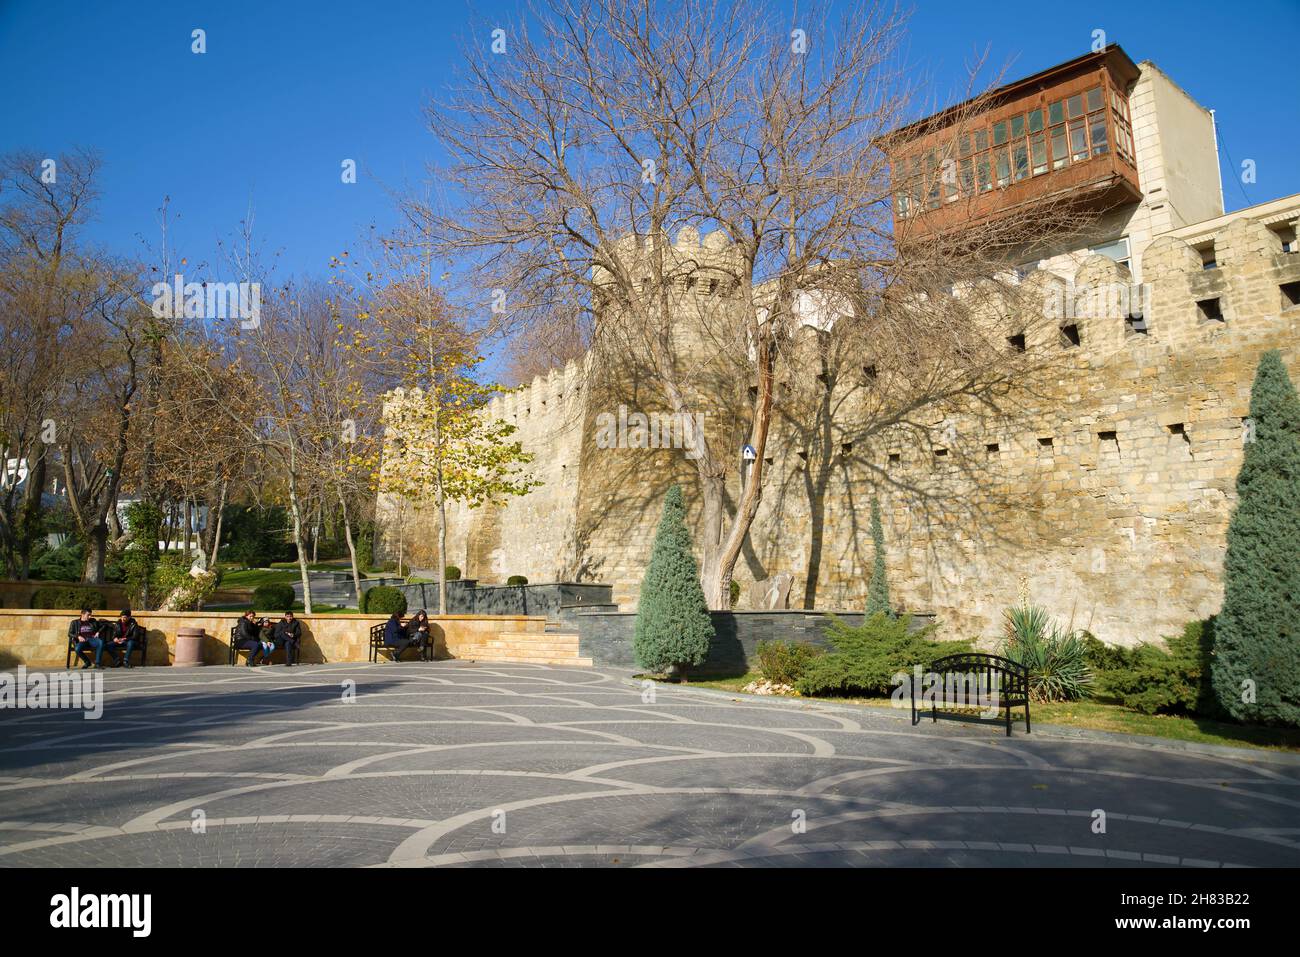 BAKÚ, AZERBAIYÁN - 29 DE DICIEMBRE de 2017: Un día soleado de diciembre en la muralla de la fortaleza de la Ciudad Vieja Foto de stock